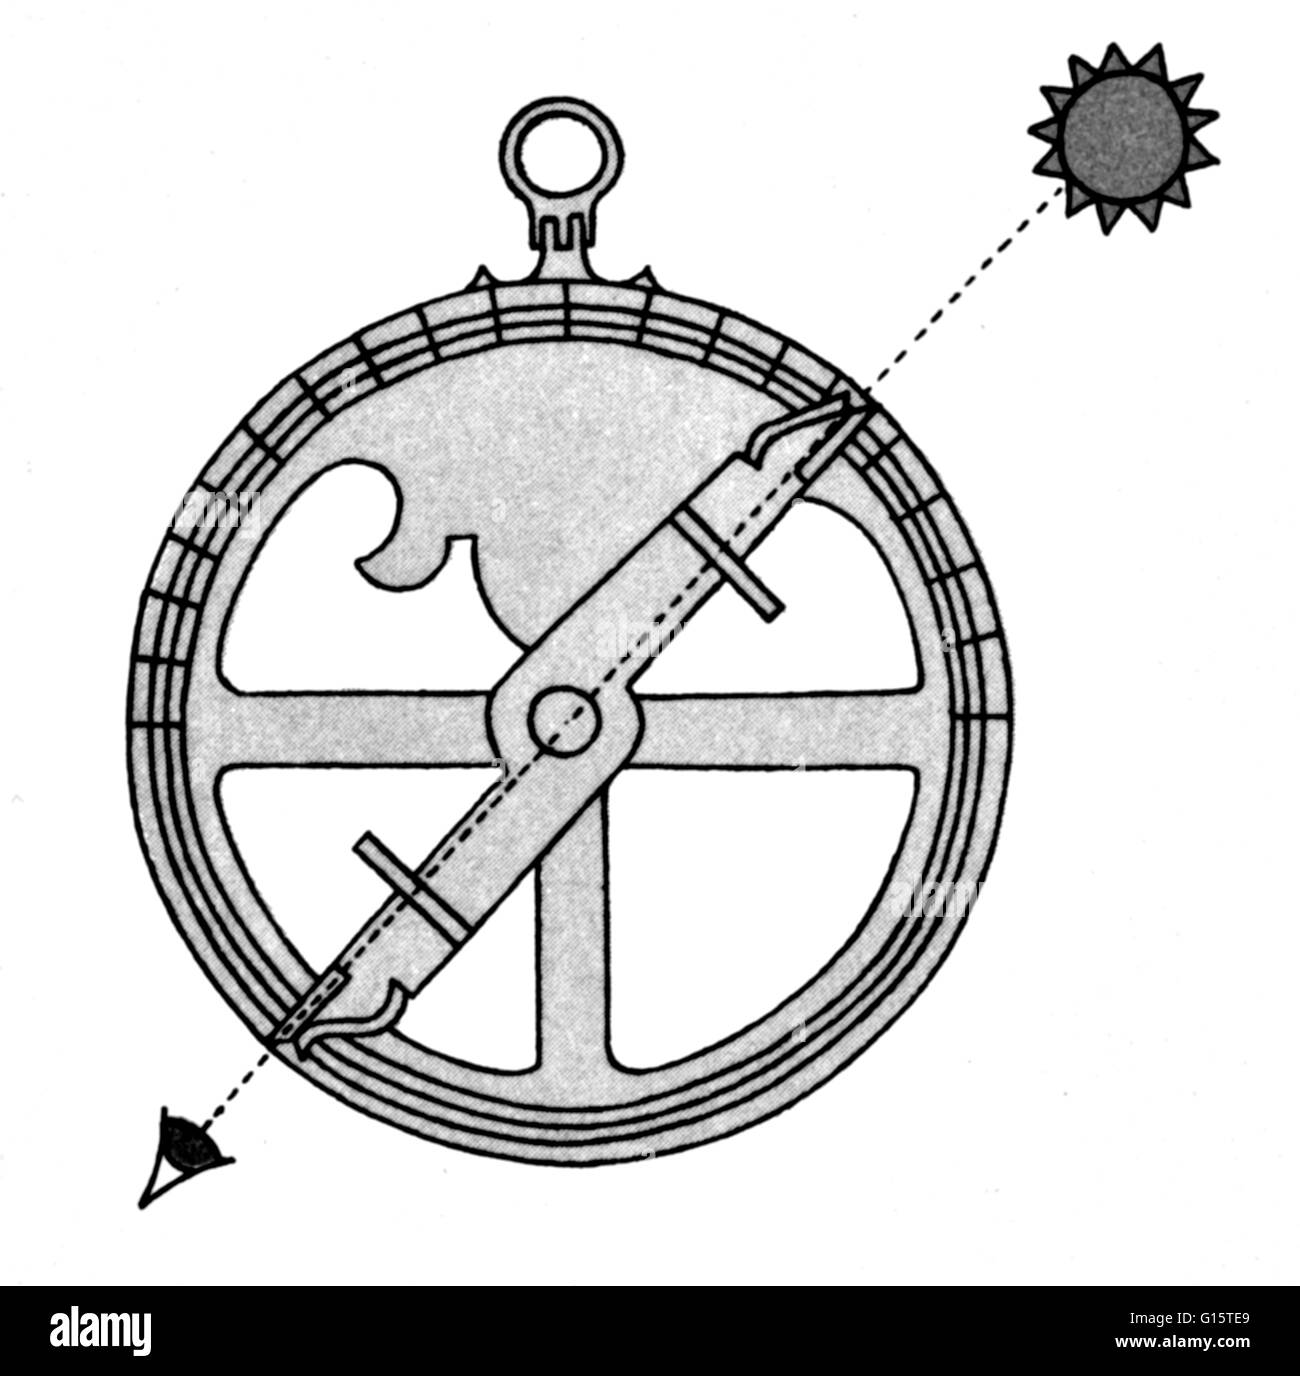 Un astrolabio è un elaborato inclinometro, storicamente usato dagli astronomi, navigatori e gli astrologi. I suoi molti usi includono il posizionamento e la previsione delle posizioni del sole e della Luna, dei pianeti e stelle, determinando il tempo locale dato agli enti locali di latitudine e a Vic Foto Stock